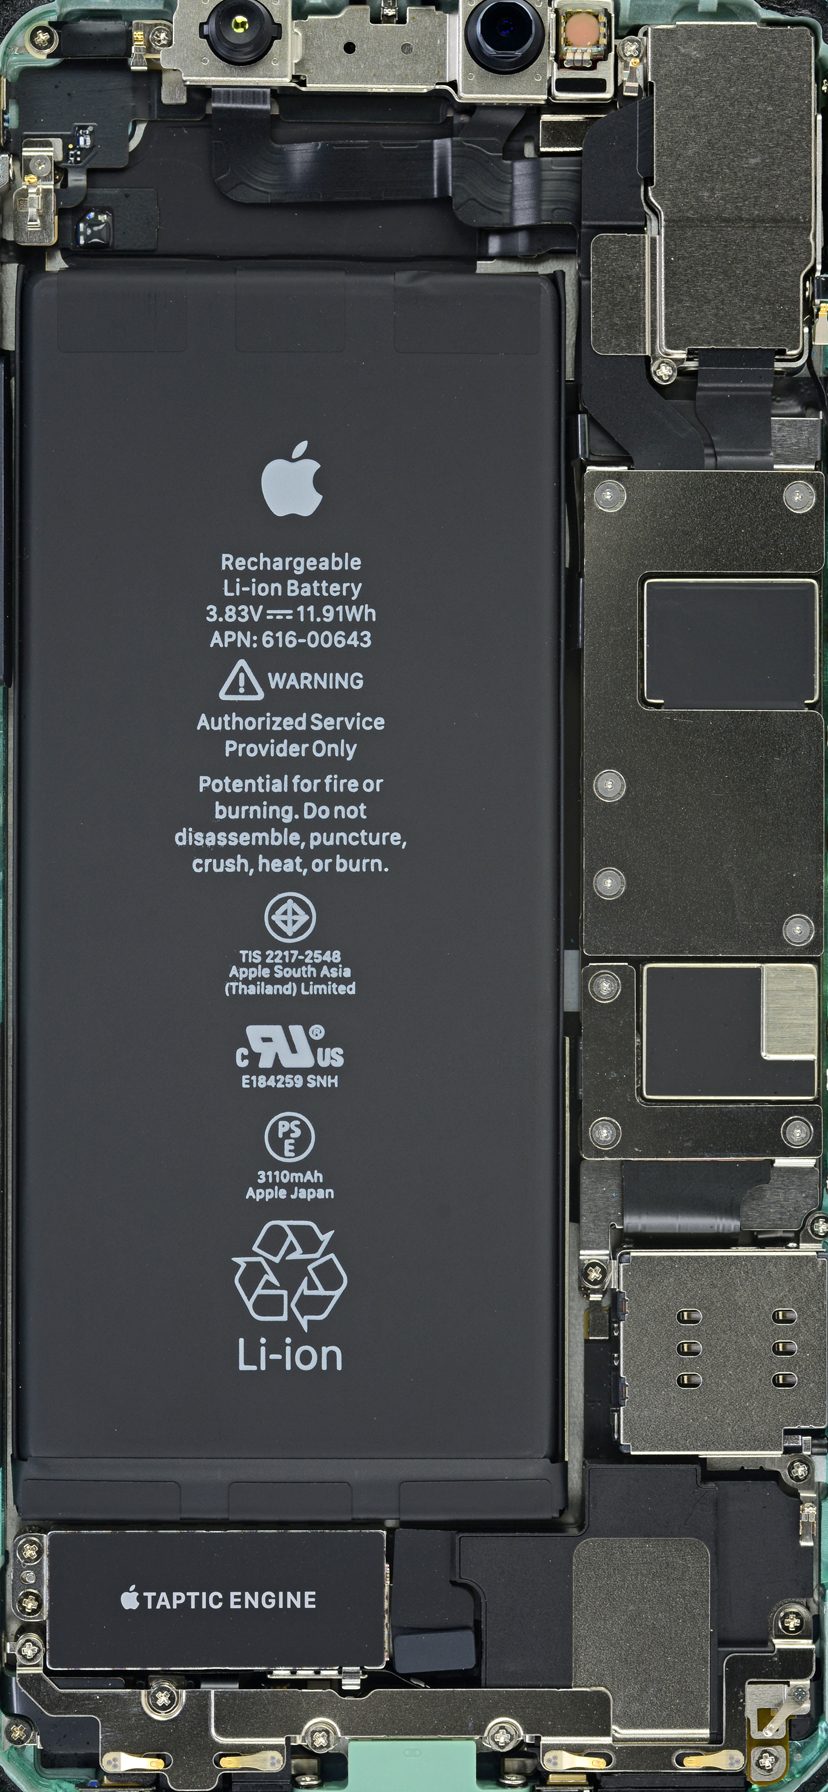 خلفيات iPhone للمكونات الداخلية في iPhone 11 و11 Pro